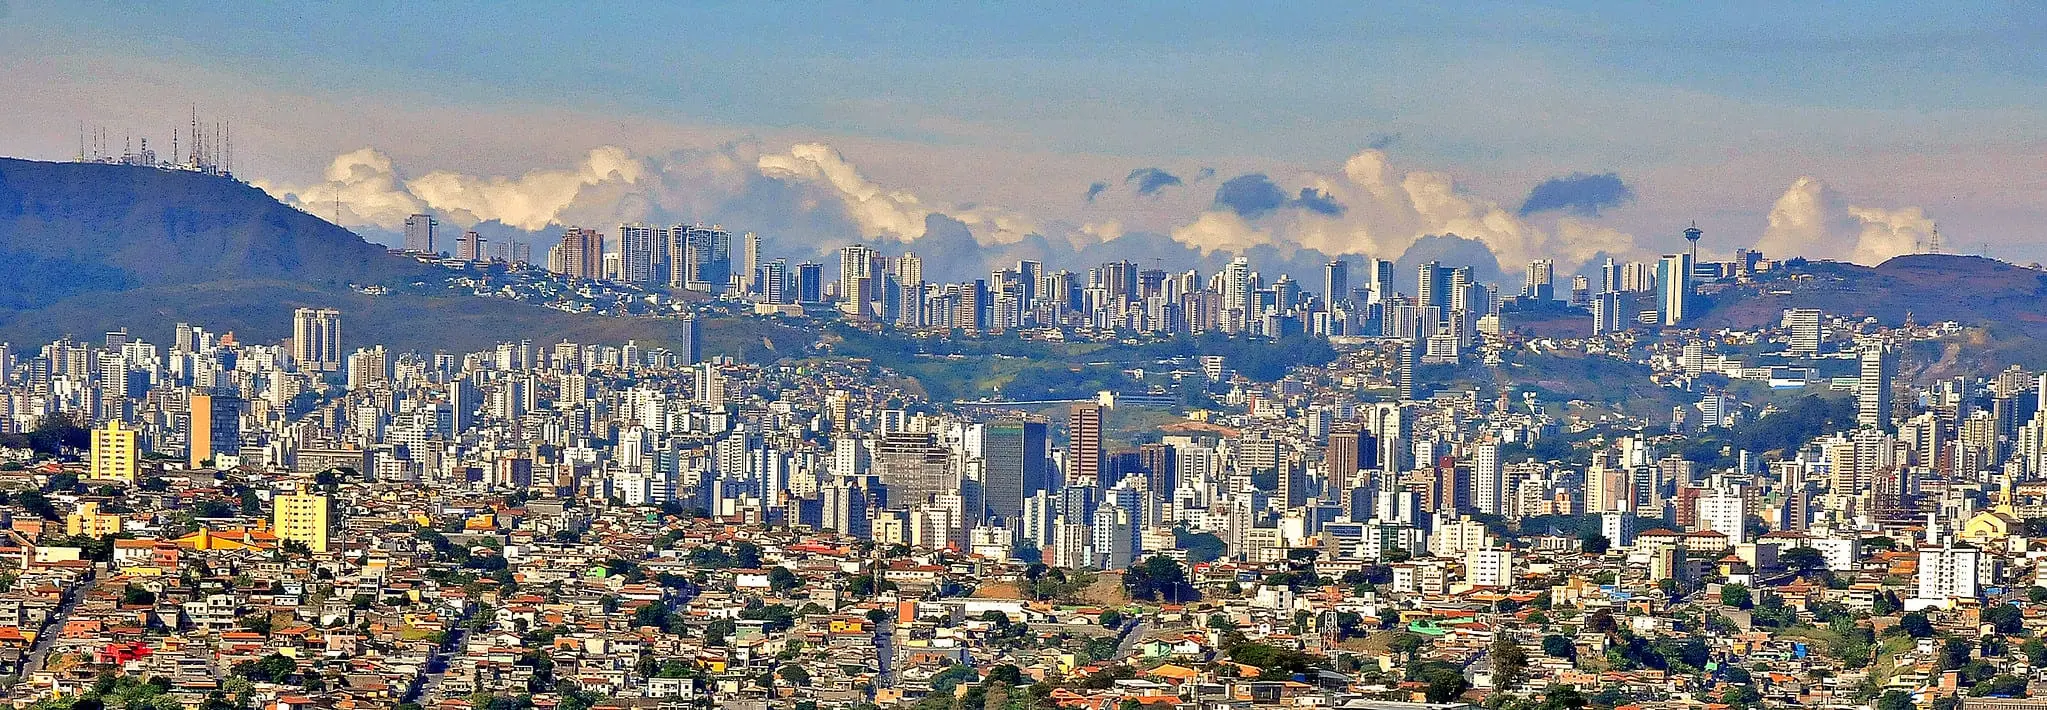 Imagem panoramica da cidade de Belo Horizonte